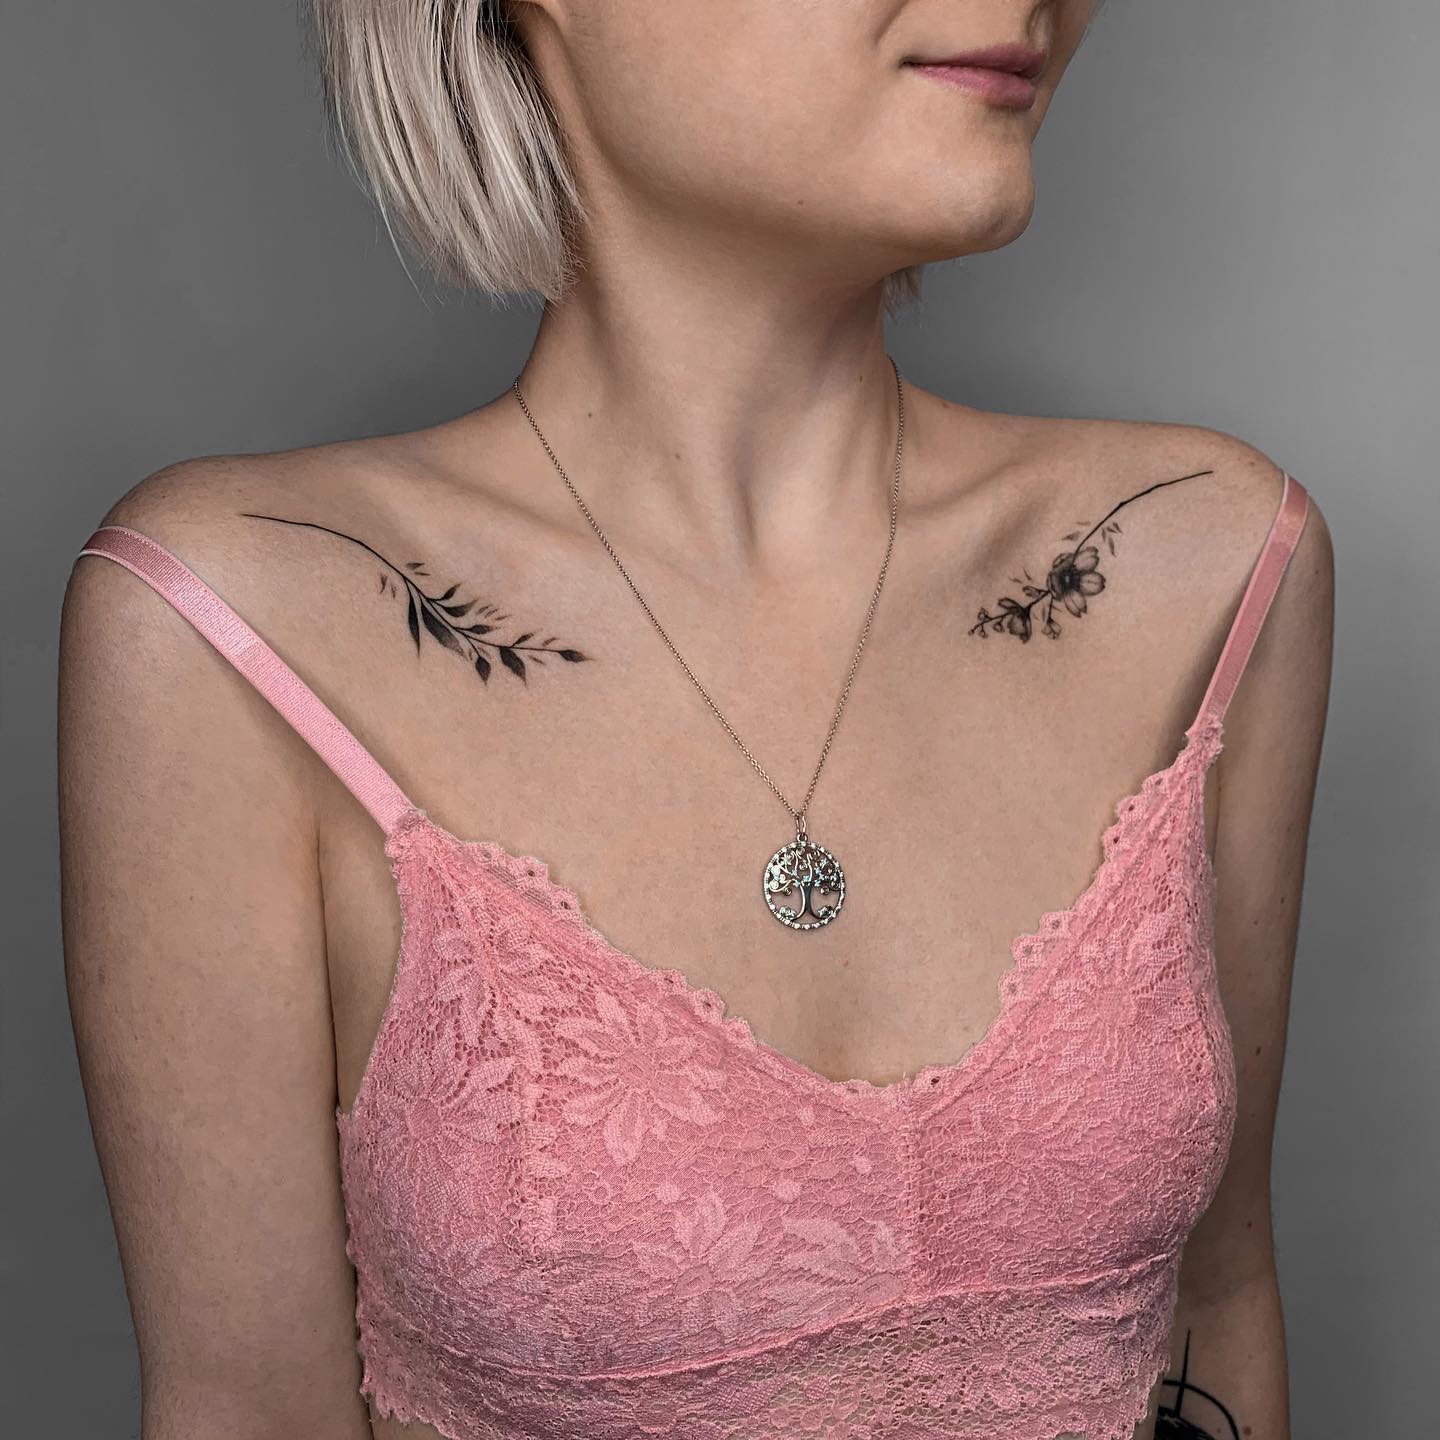 Tatuaje femenino de tinta negra en la clavícula.